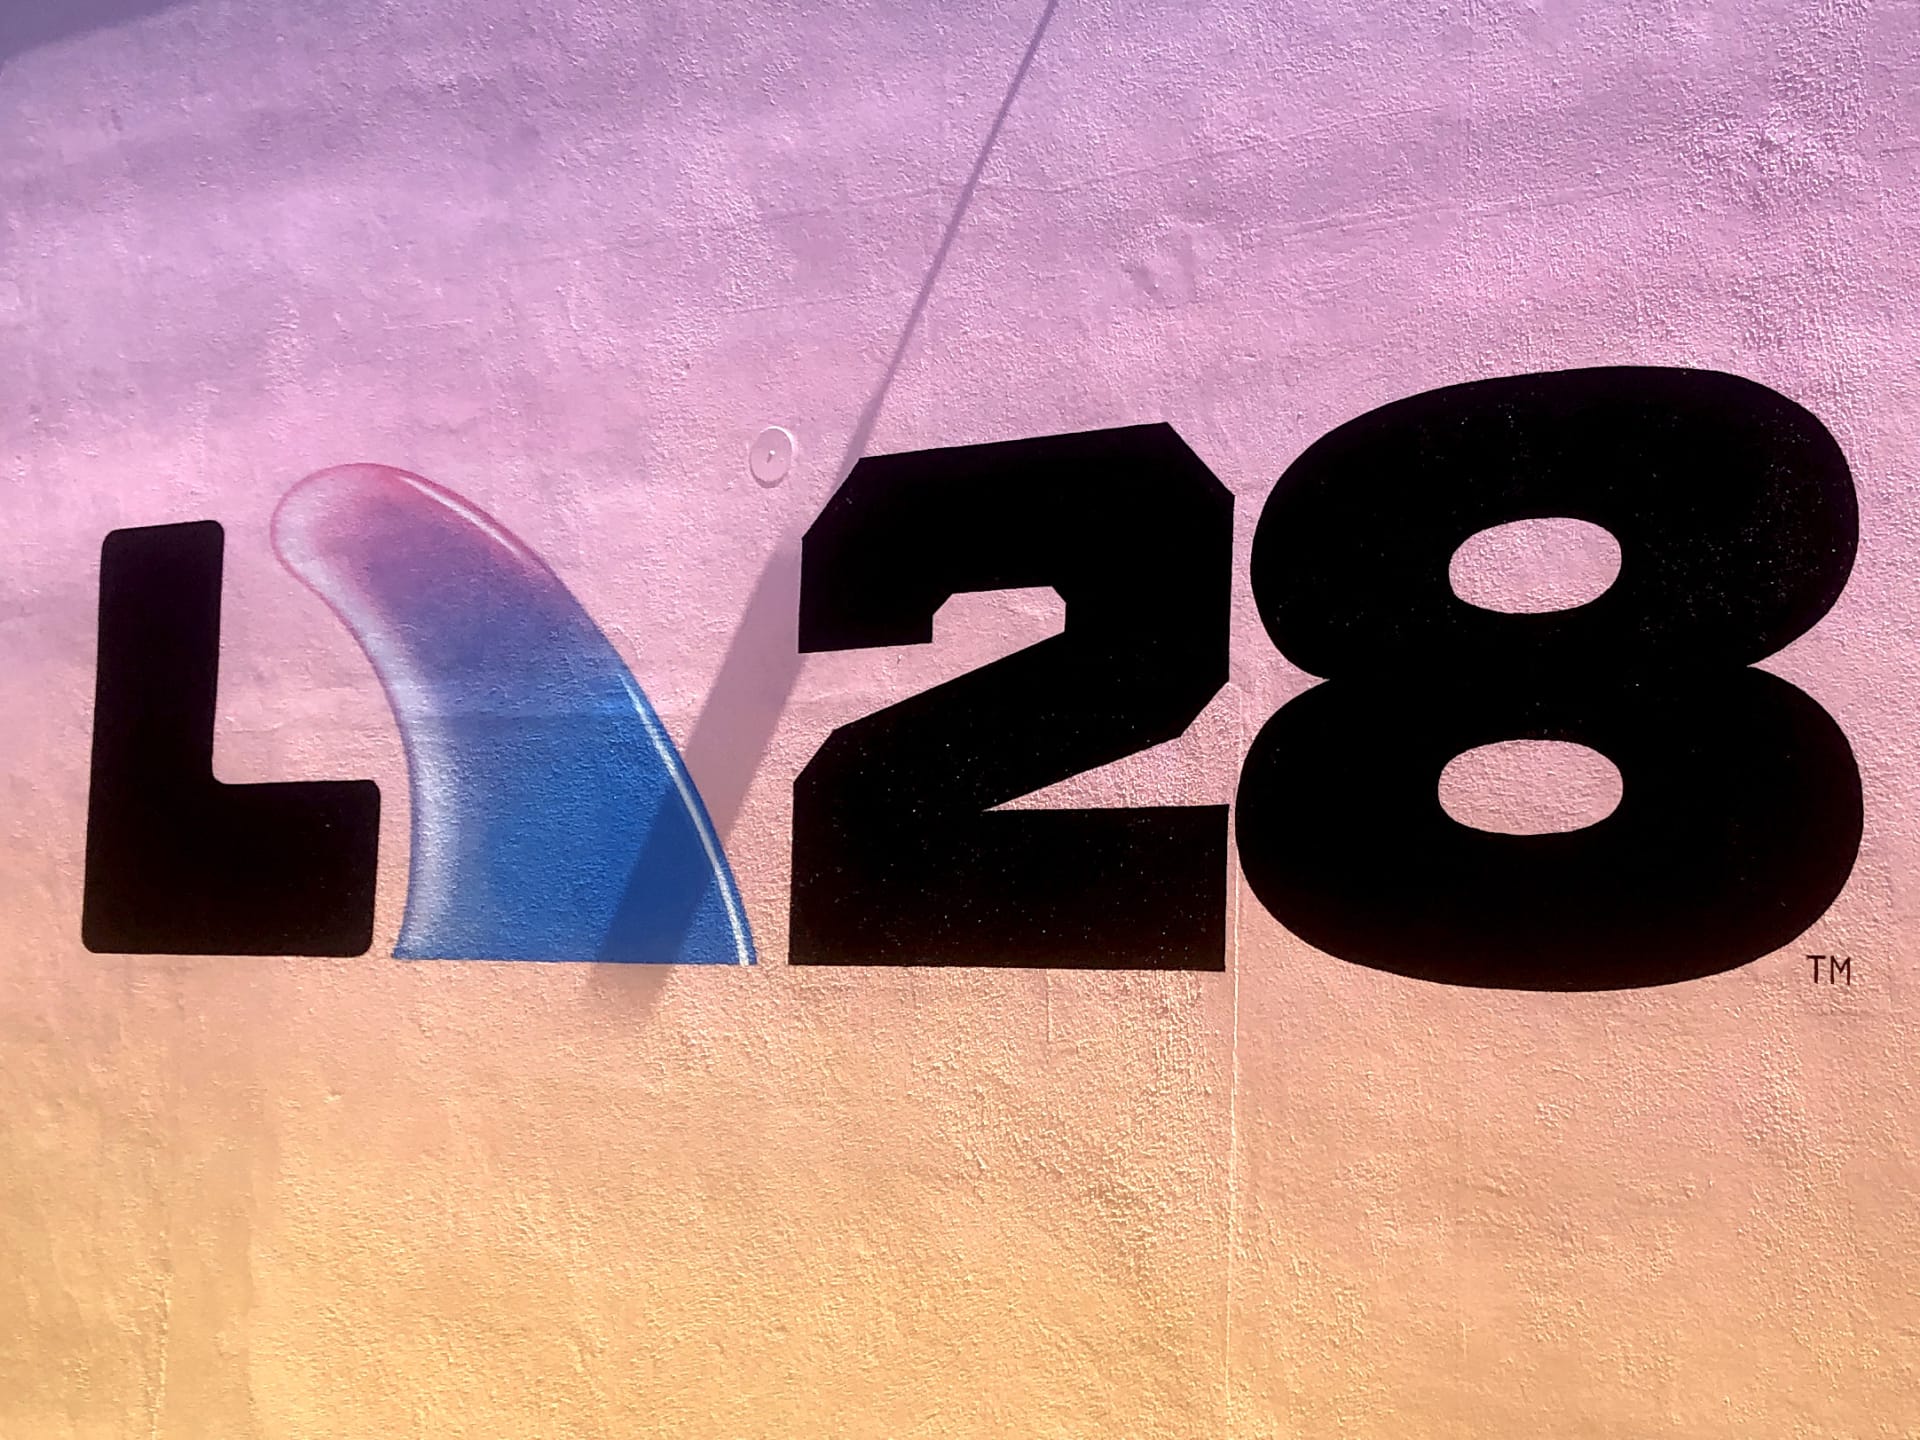 Olympiáda 2028 v Los Angeles: Jedna z verzí oficiálního loga her, v tomto případě písmeno A představuje surf, surfing bude jedním z nových sportů na olympiádě.